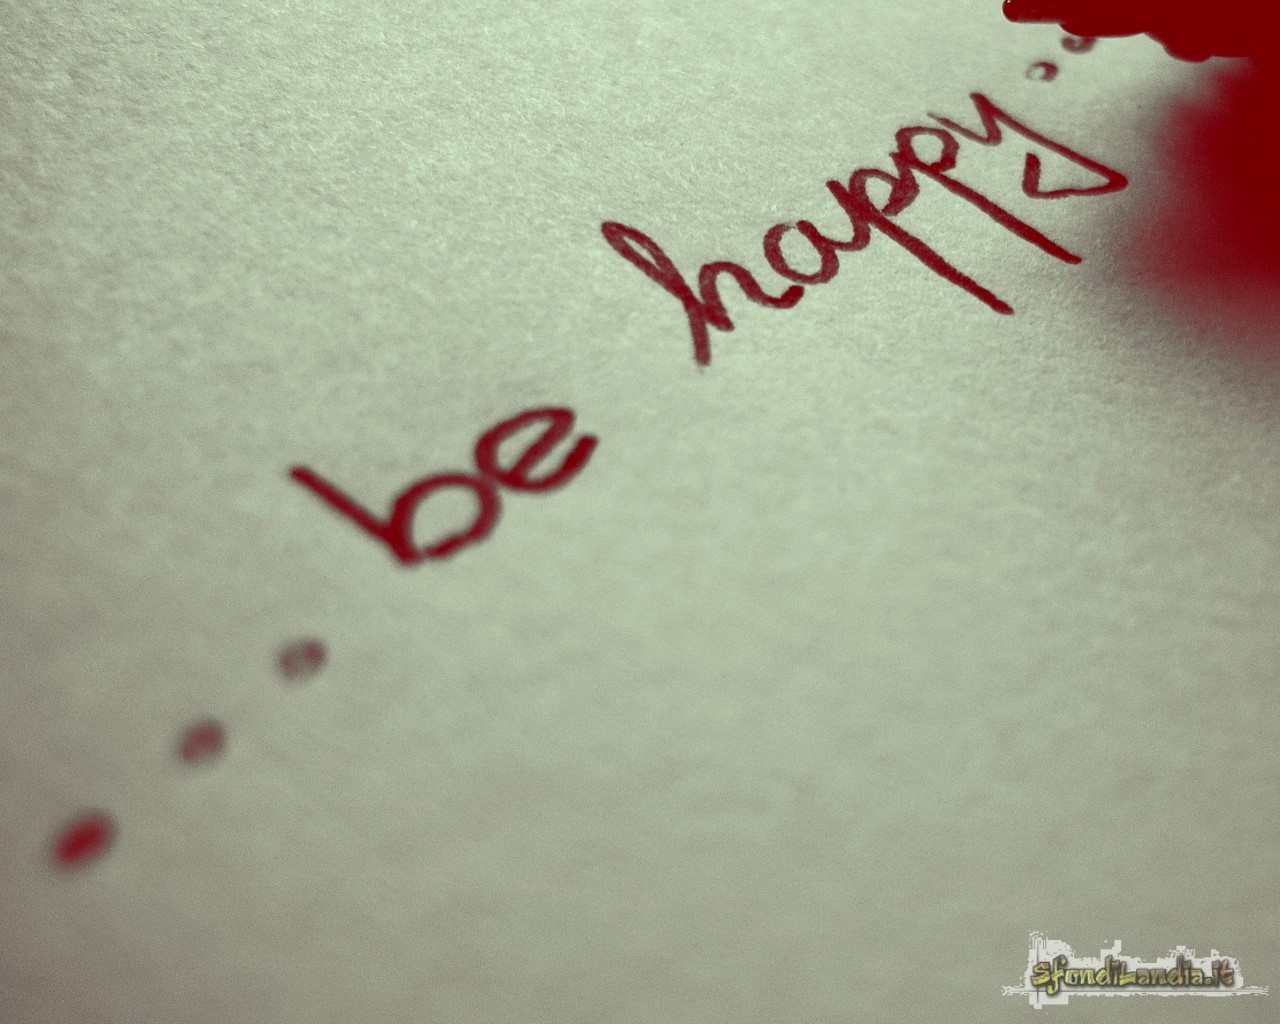 ...Be Happy!